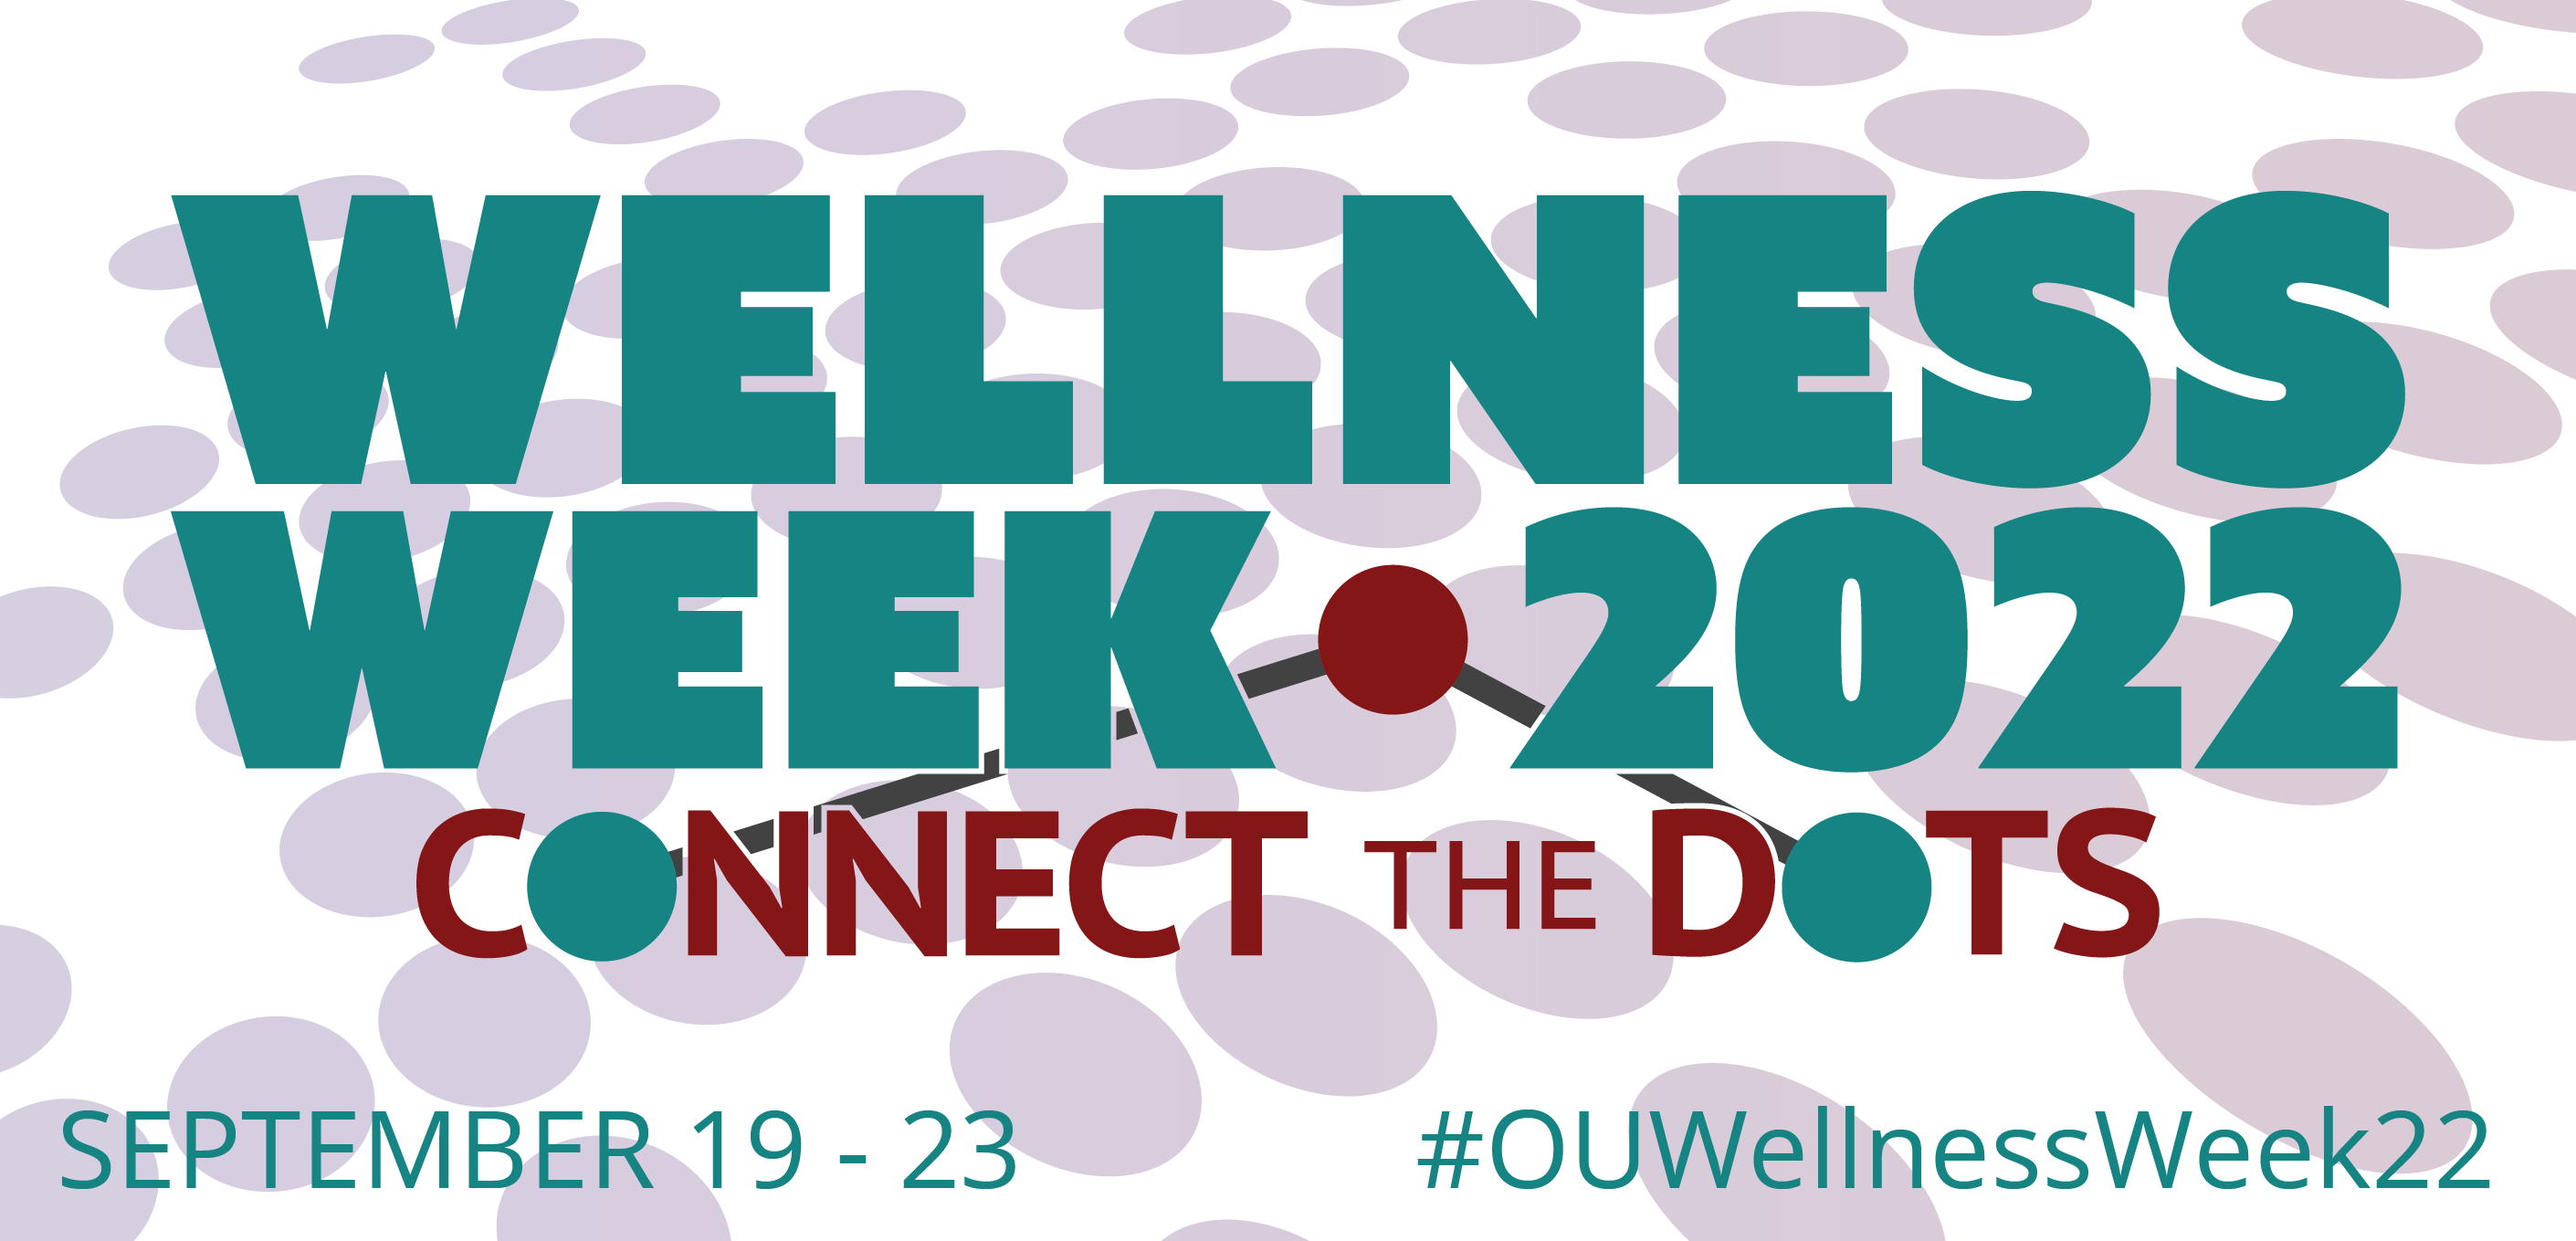 Wellness Week is September 19 - 23, 2022